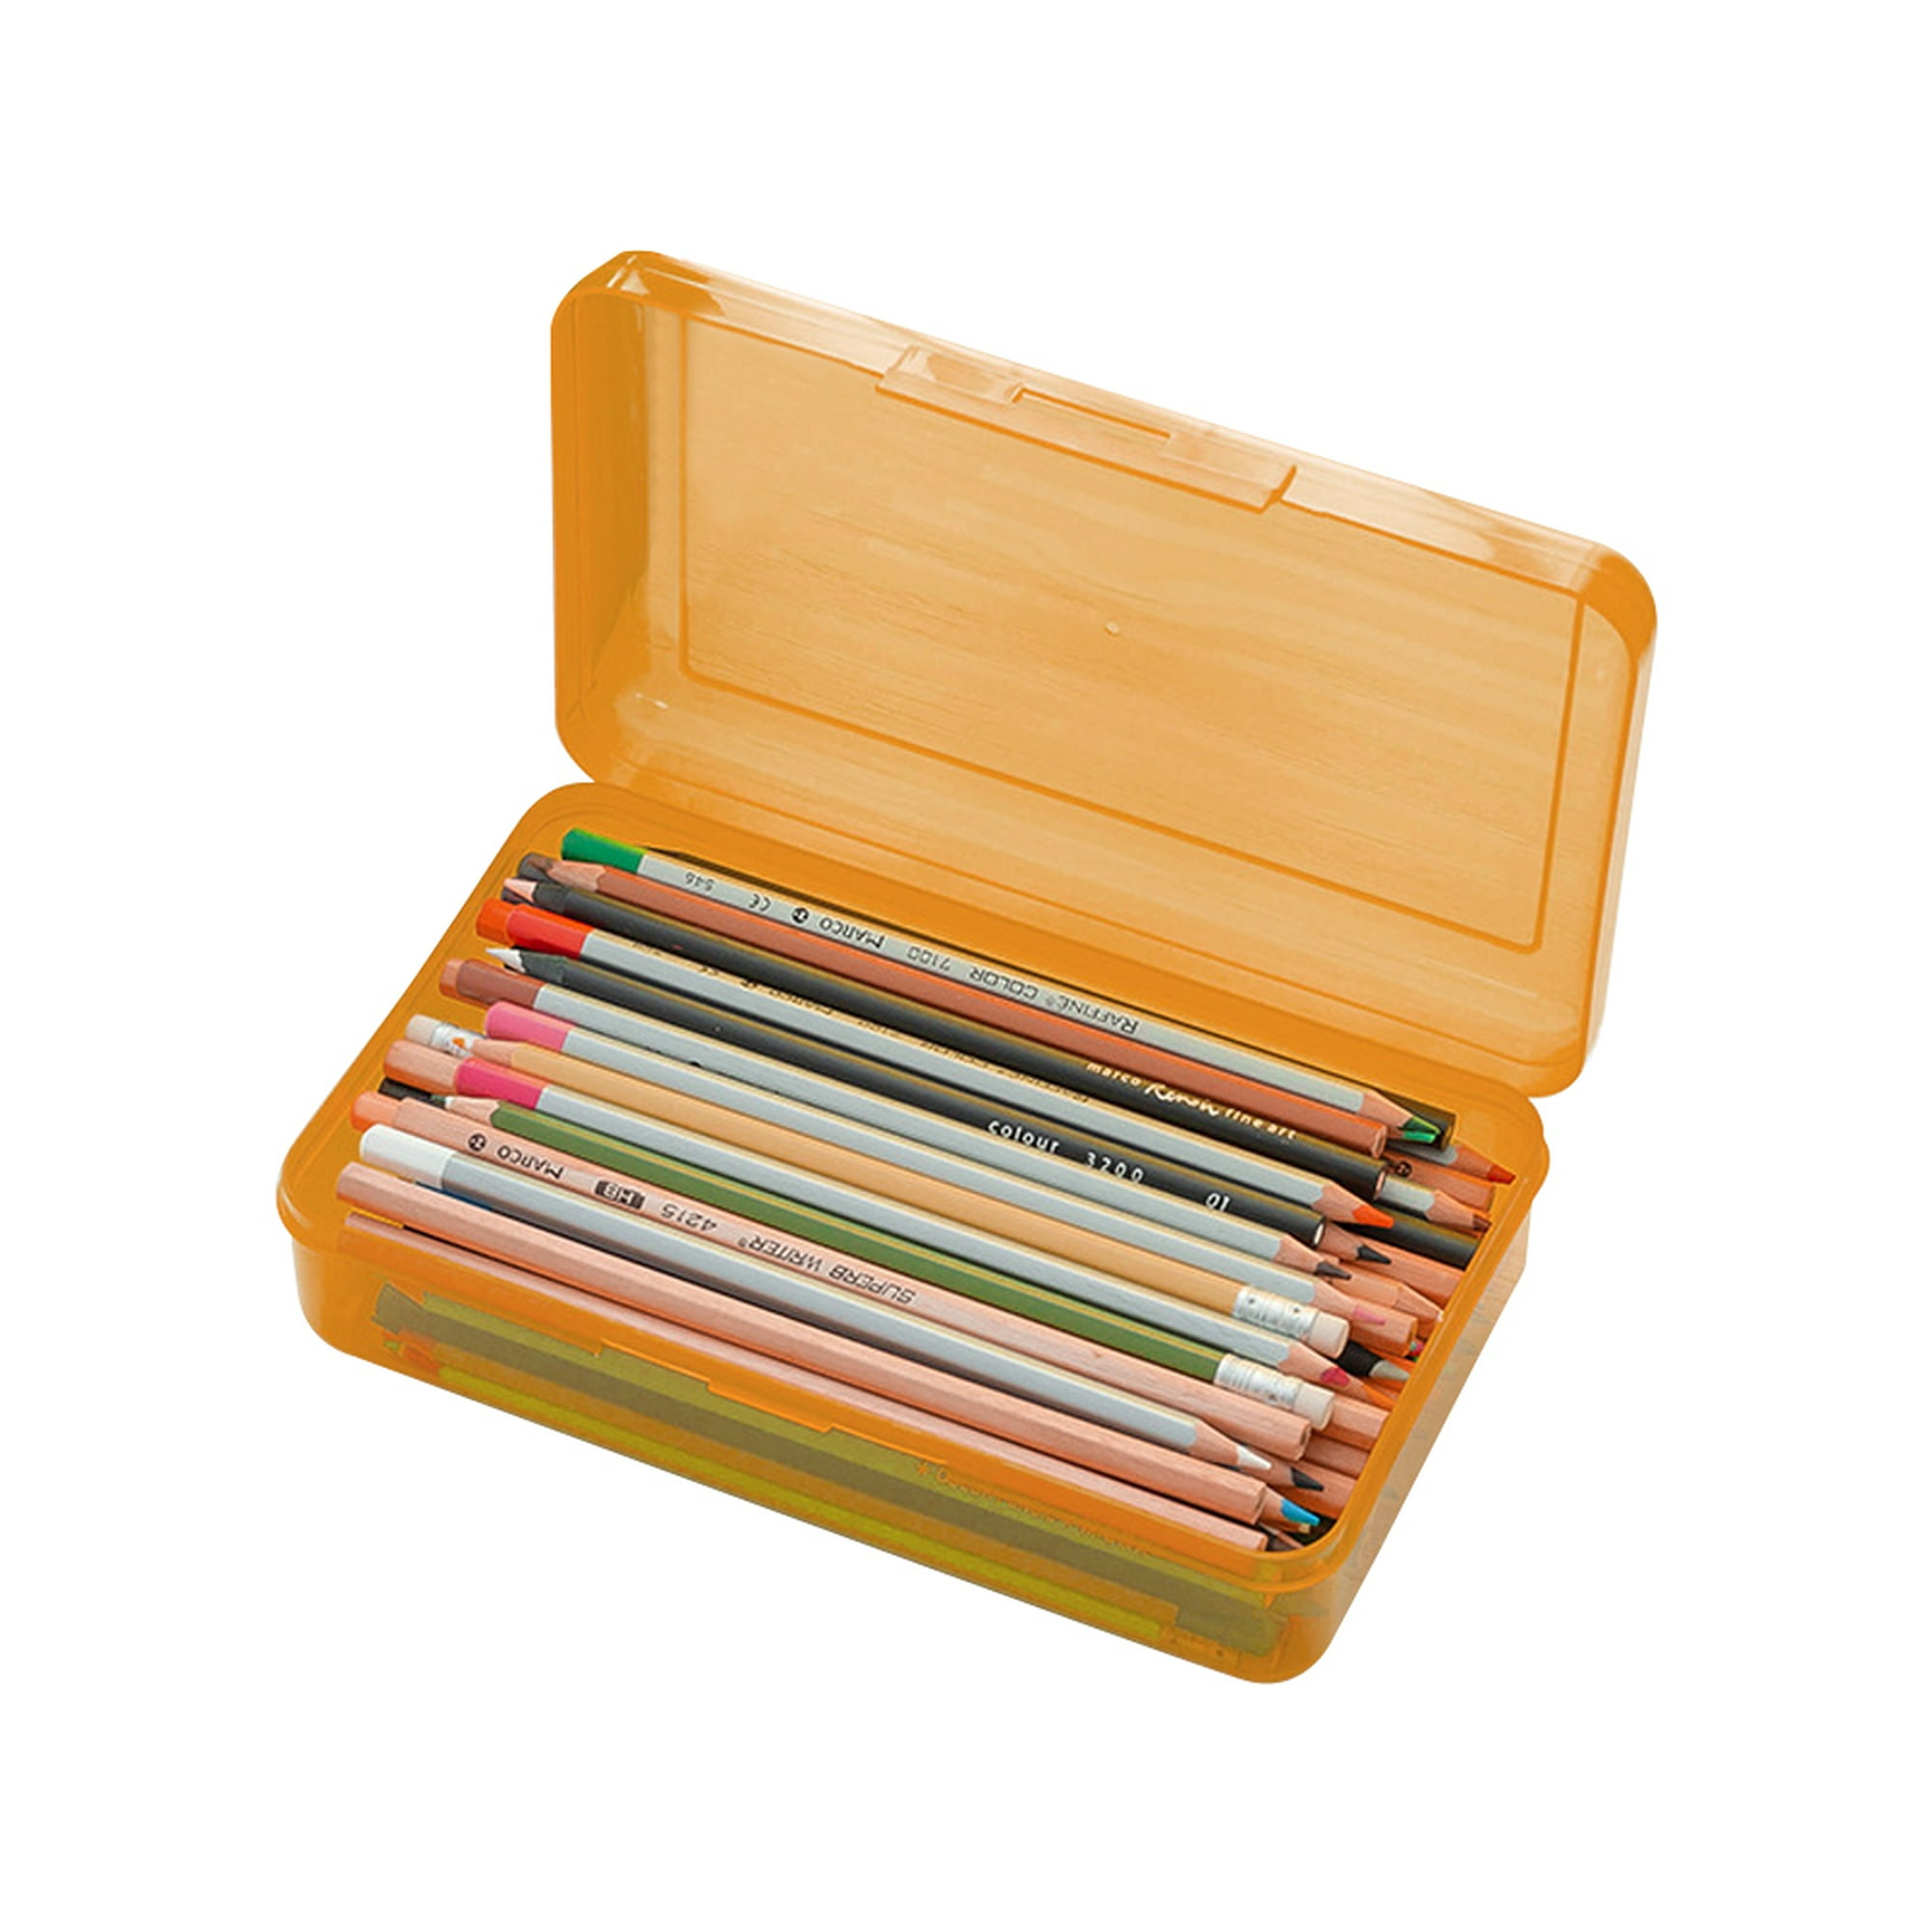 Caja de lápices de plástico  Personaliza tu aprendizaje